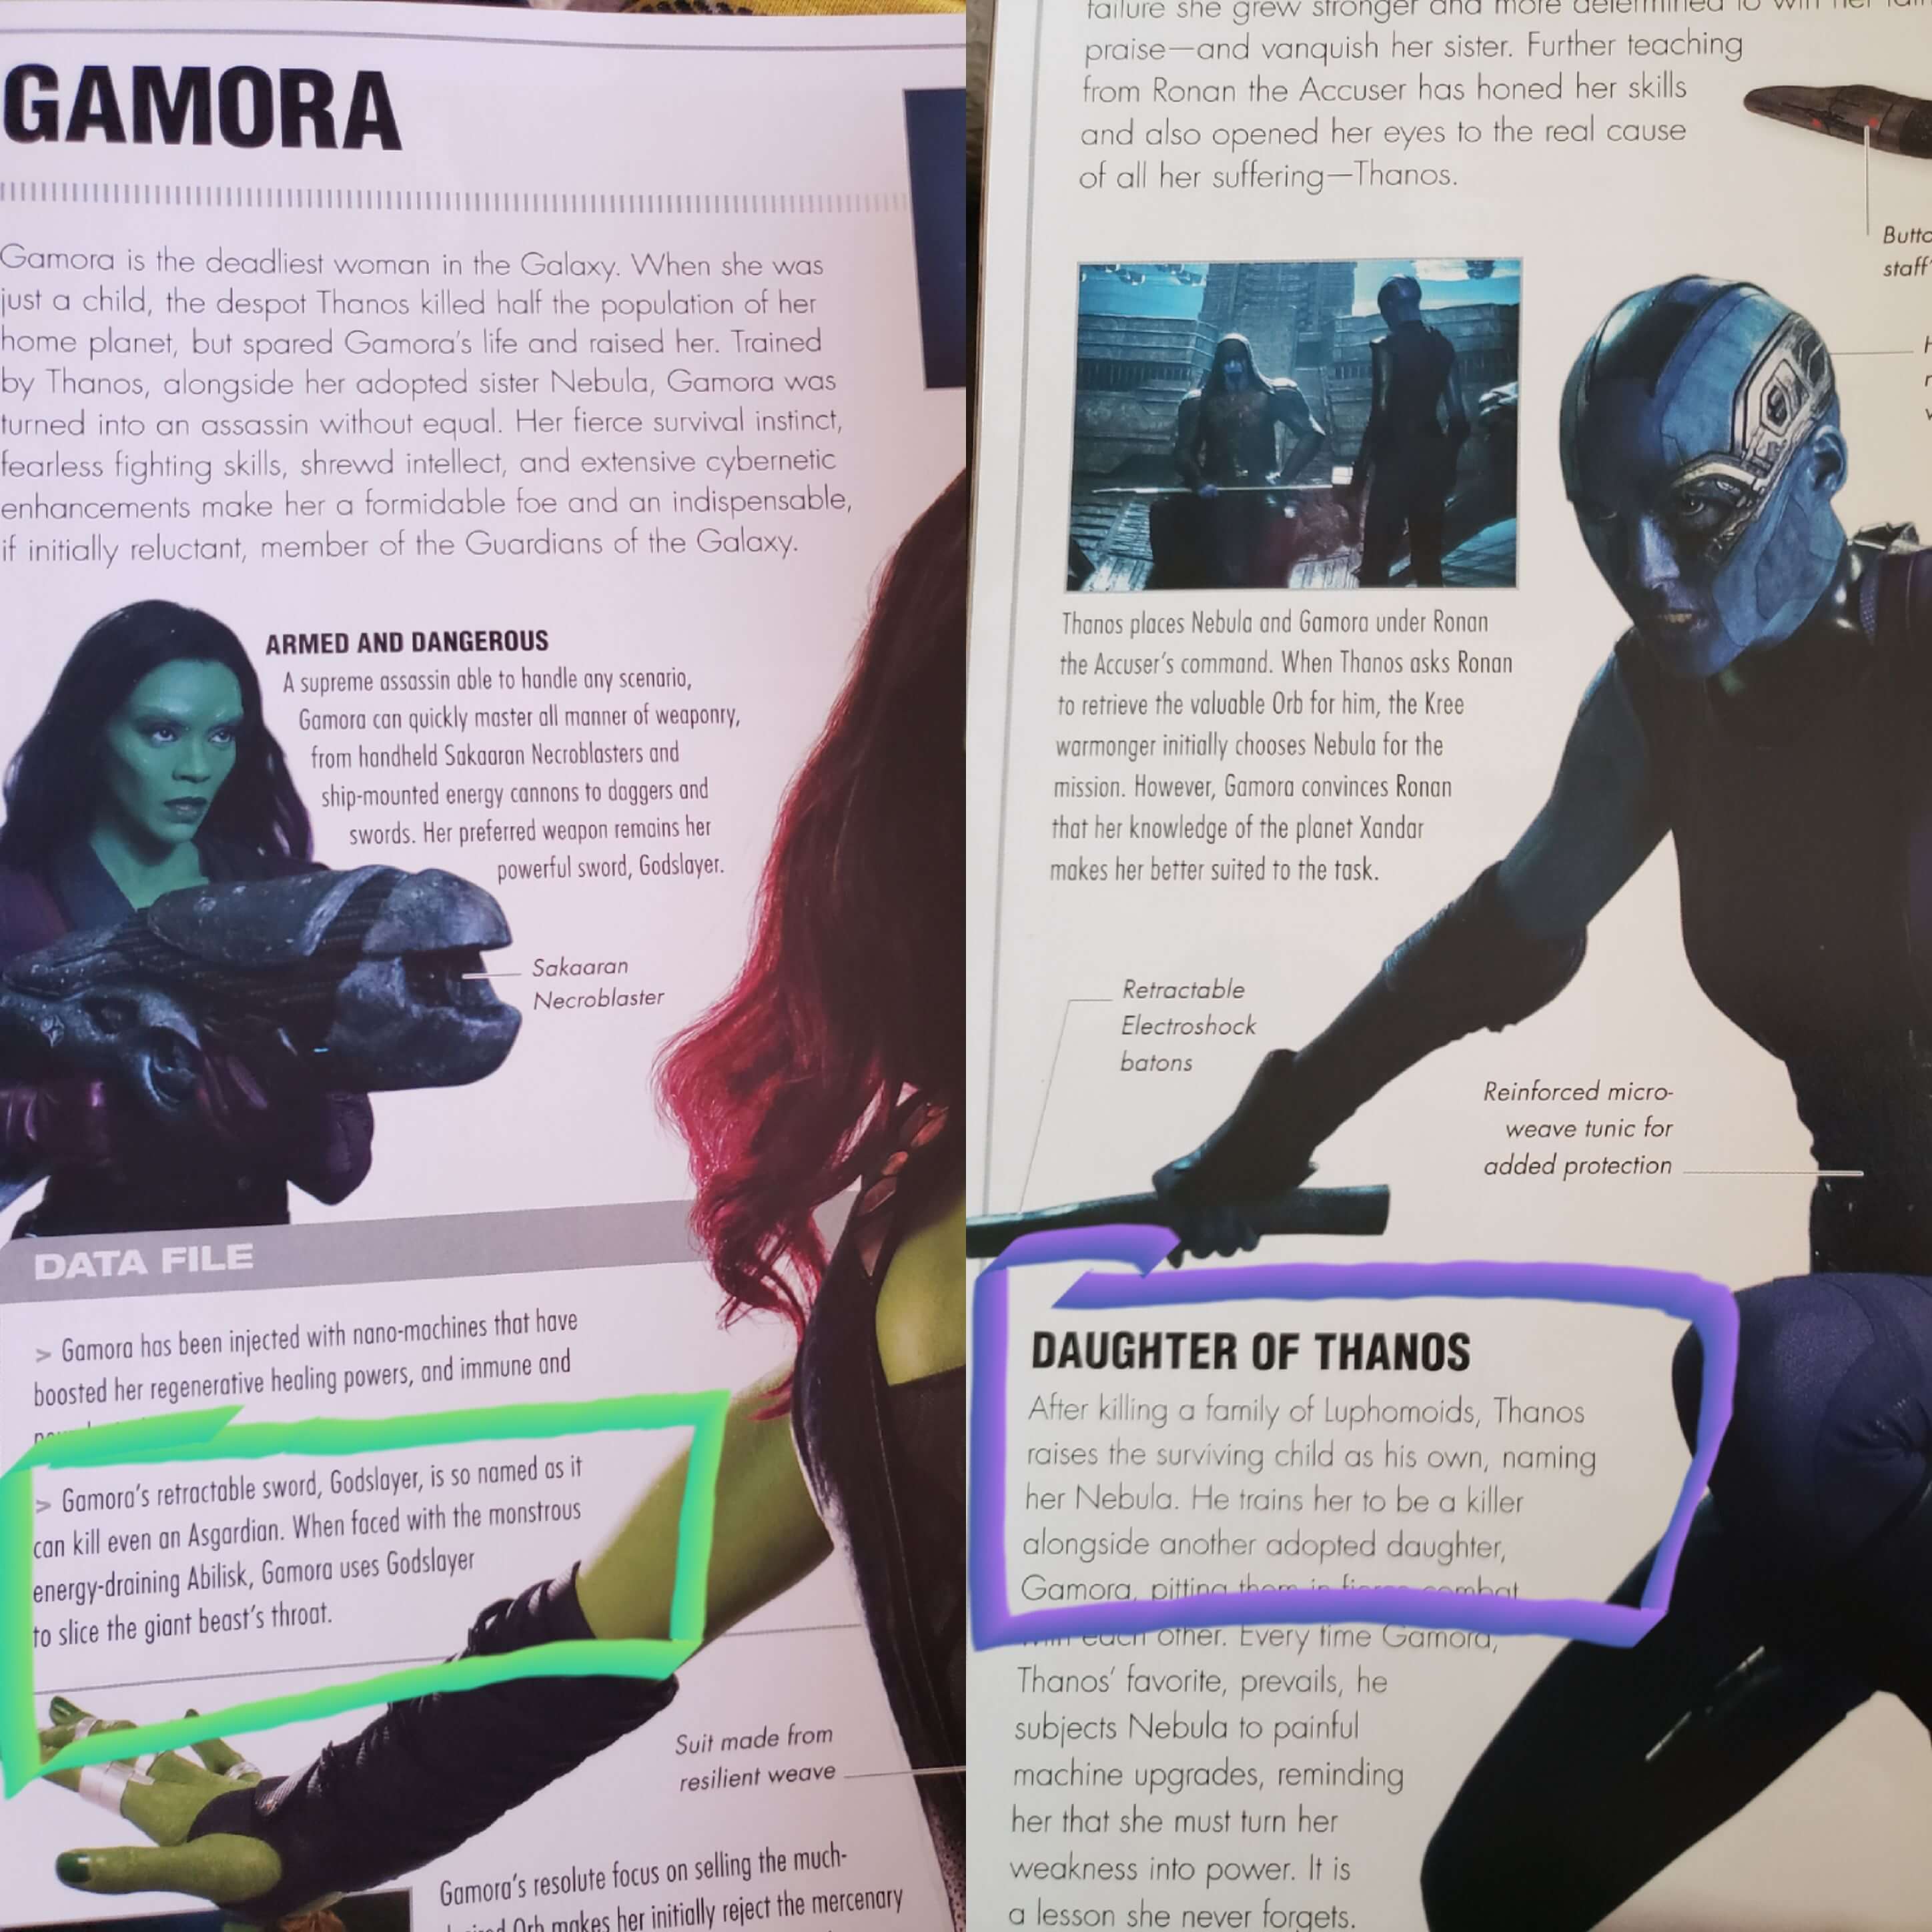 Vingadores Guerra Infinita Espada da Gamora pode ser letal para Thor 01